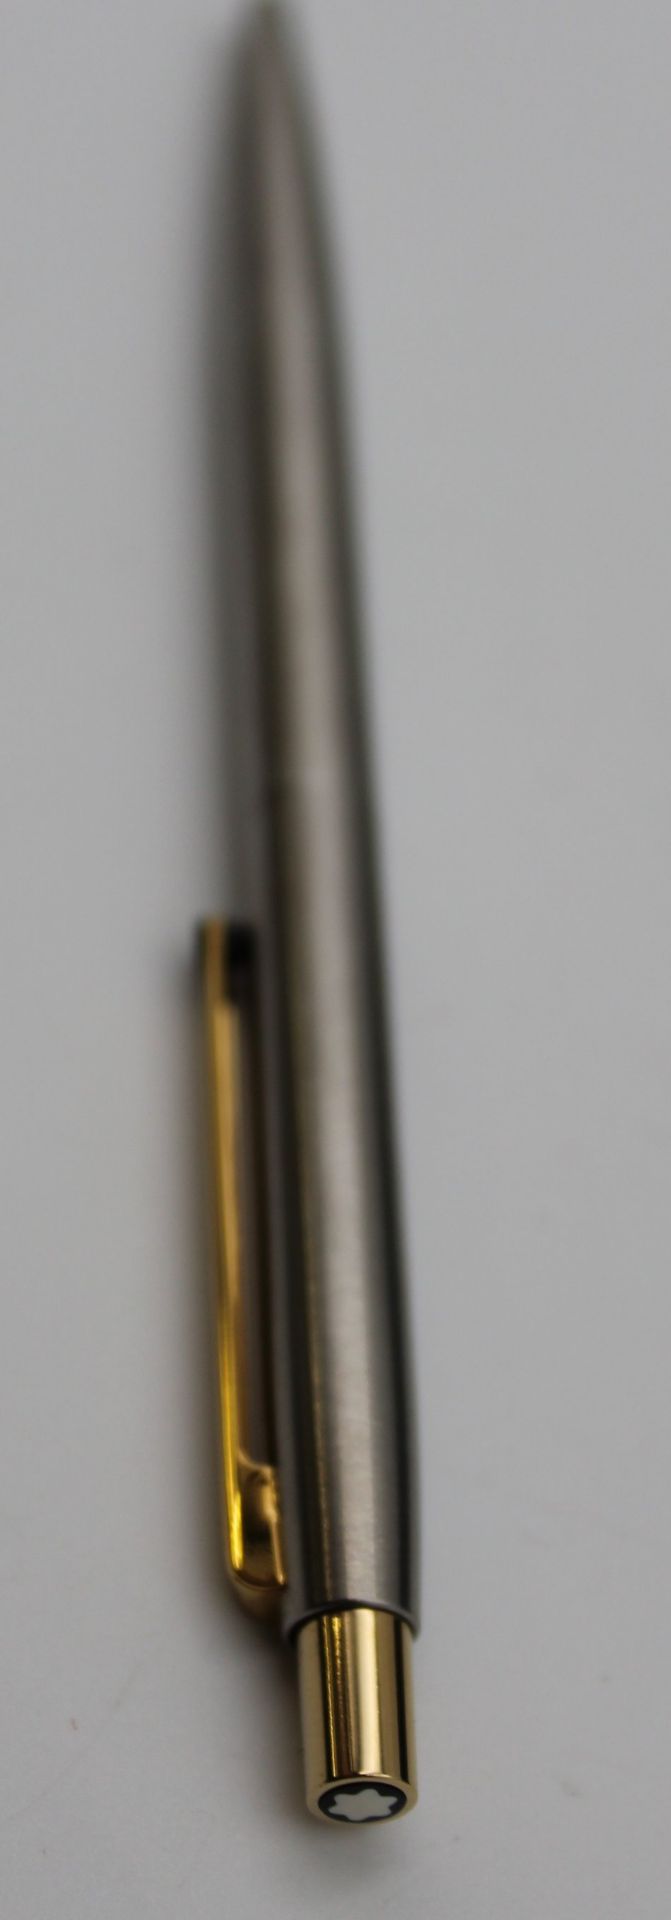 Kugelschreiber, Montblanc, in Etui, Gravur und datiert  1987 - Bild 3 aus 6